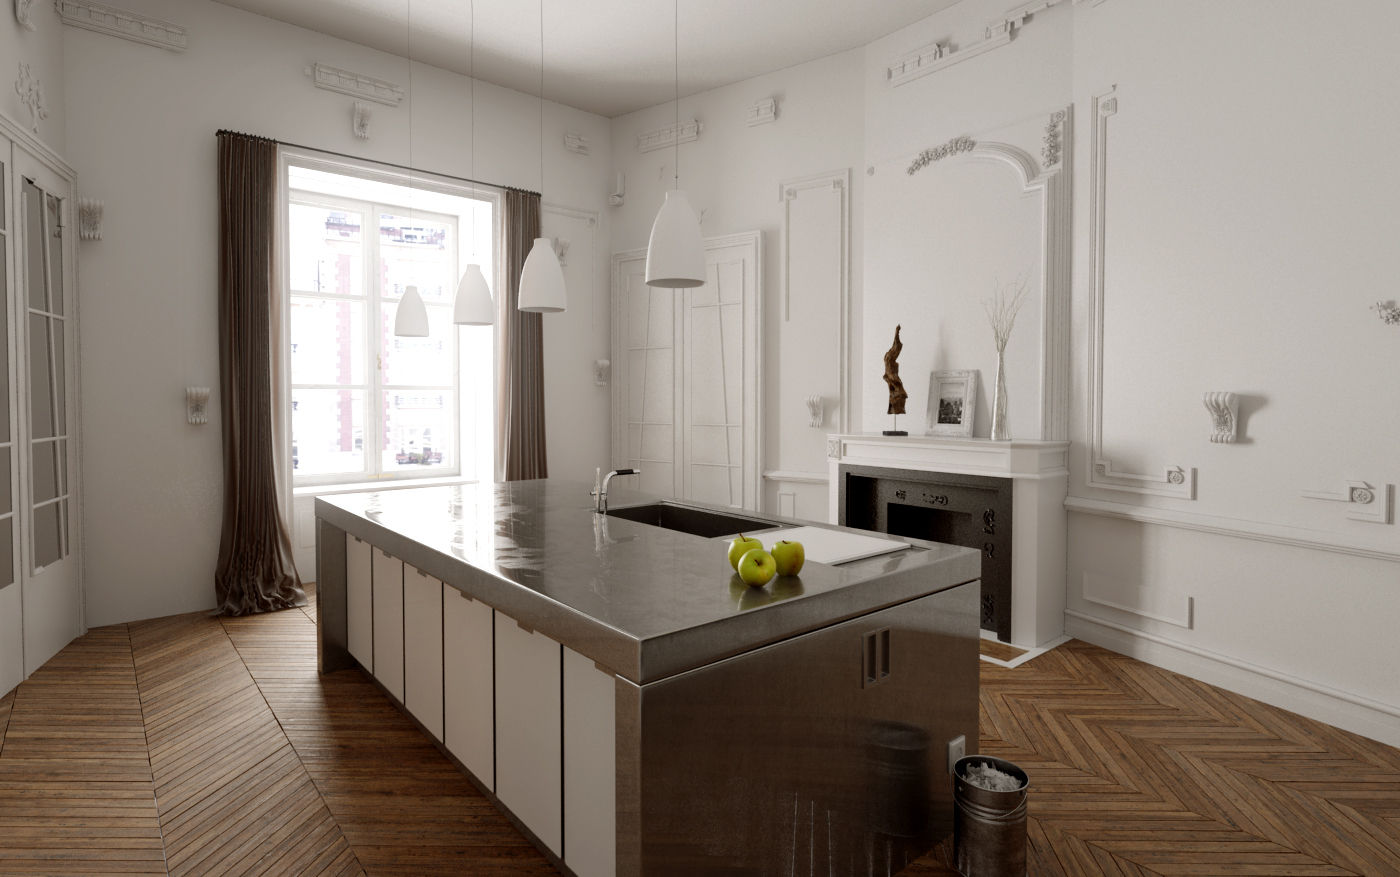 110 m² découpe Haussmann, Better and better Better and better Moderne keukens